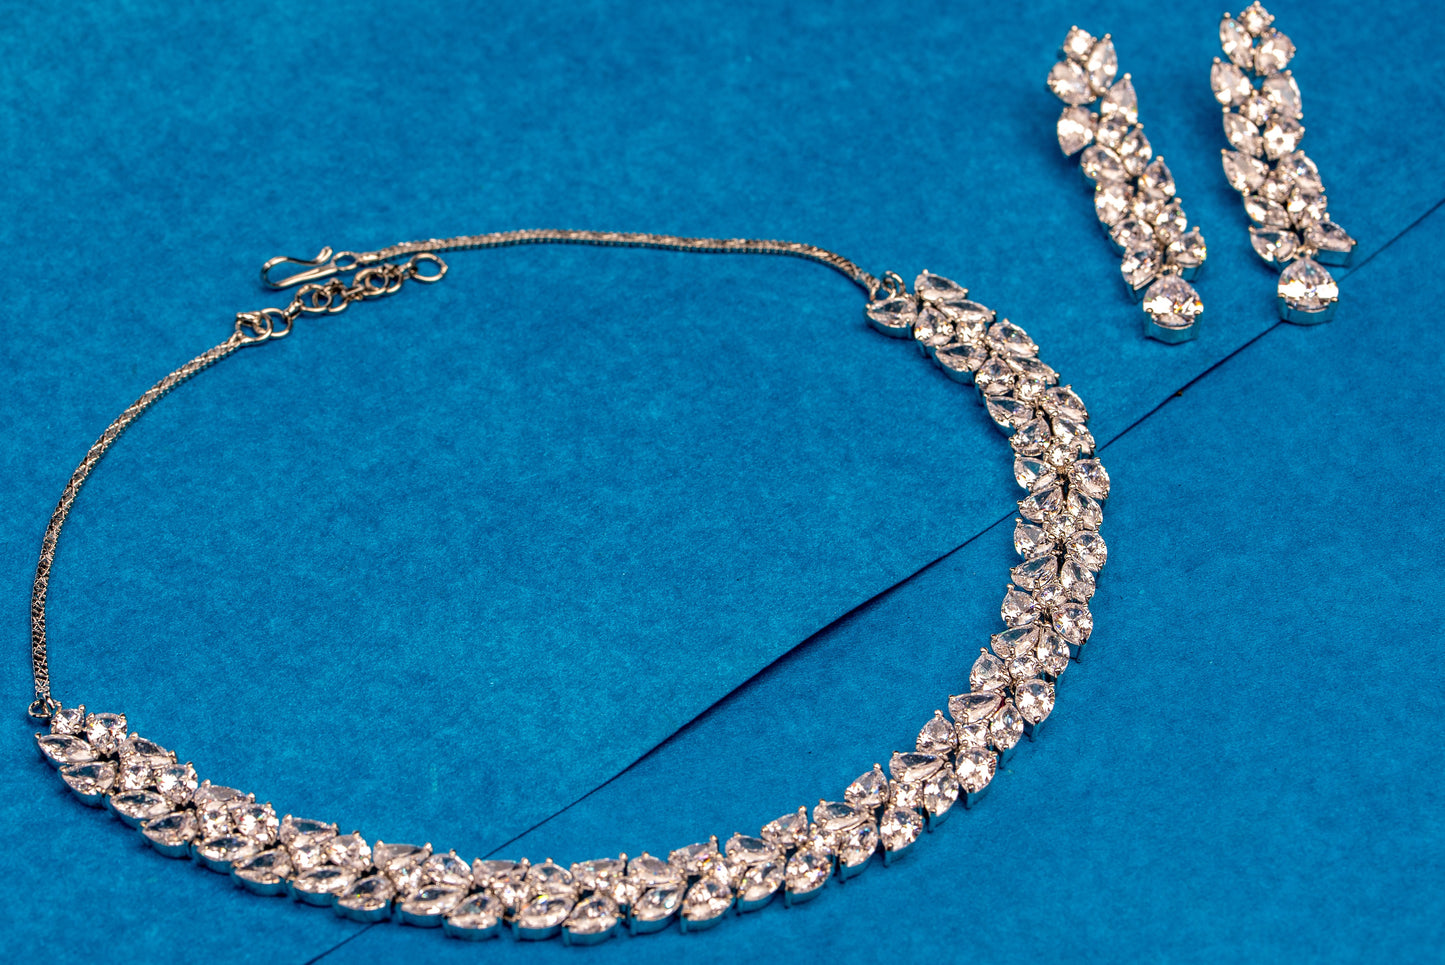 Eleganza shimmer necklace set